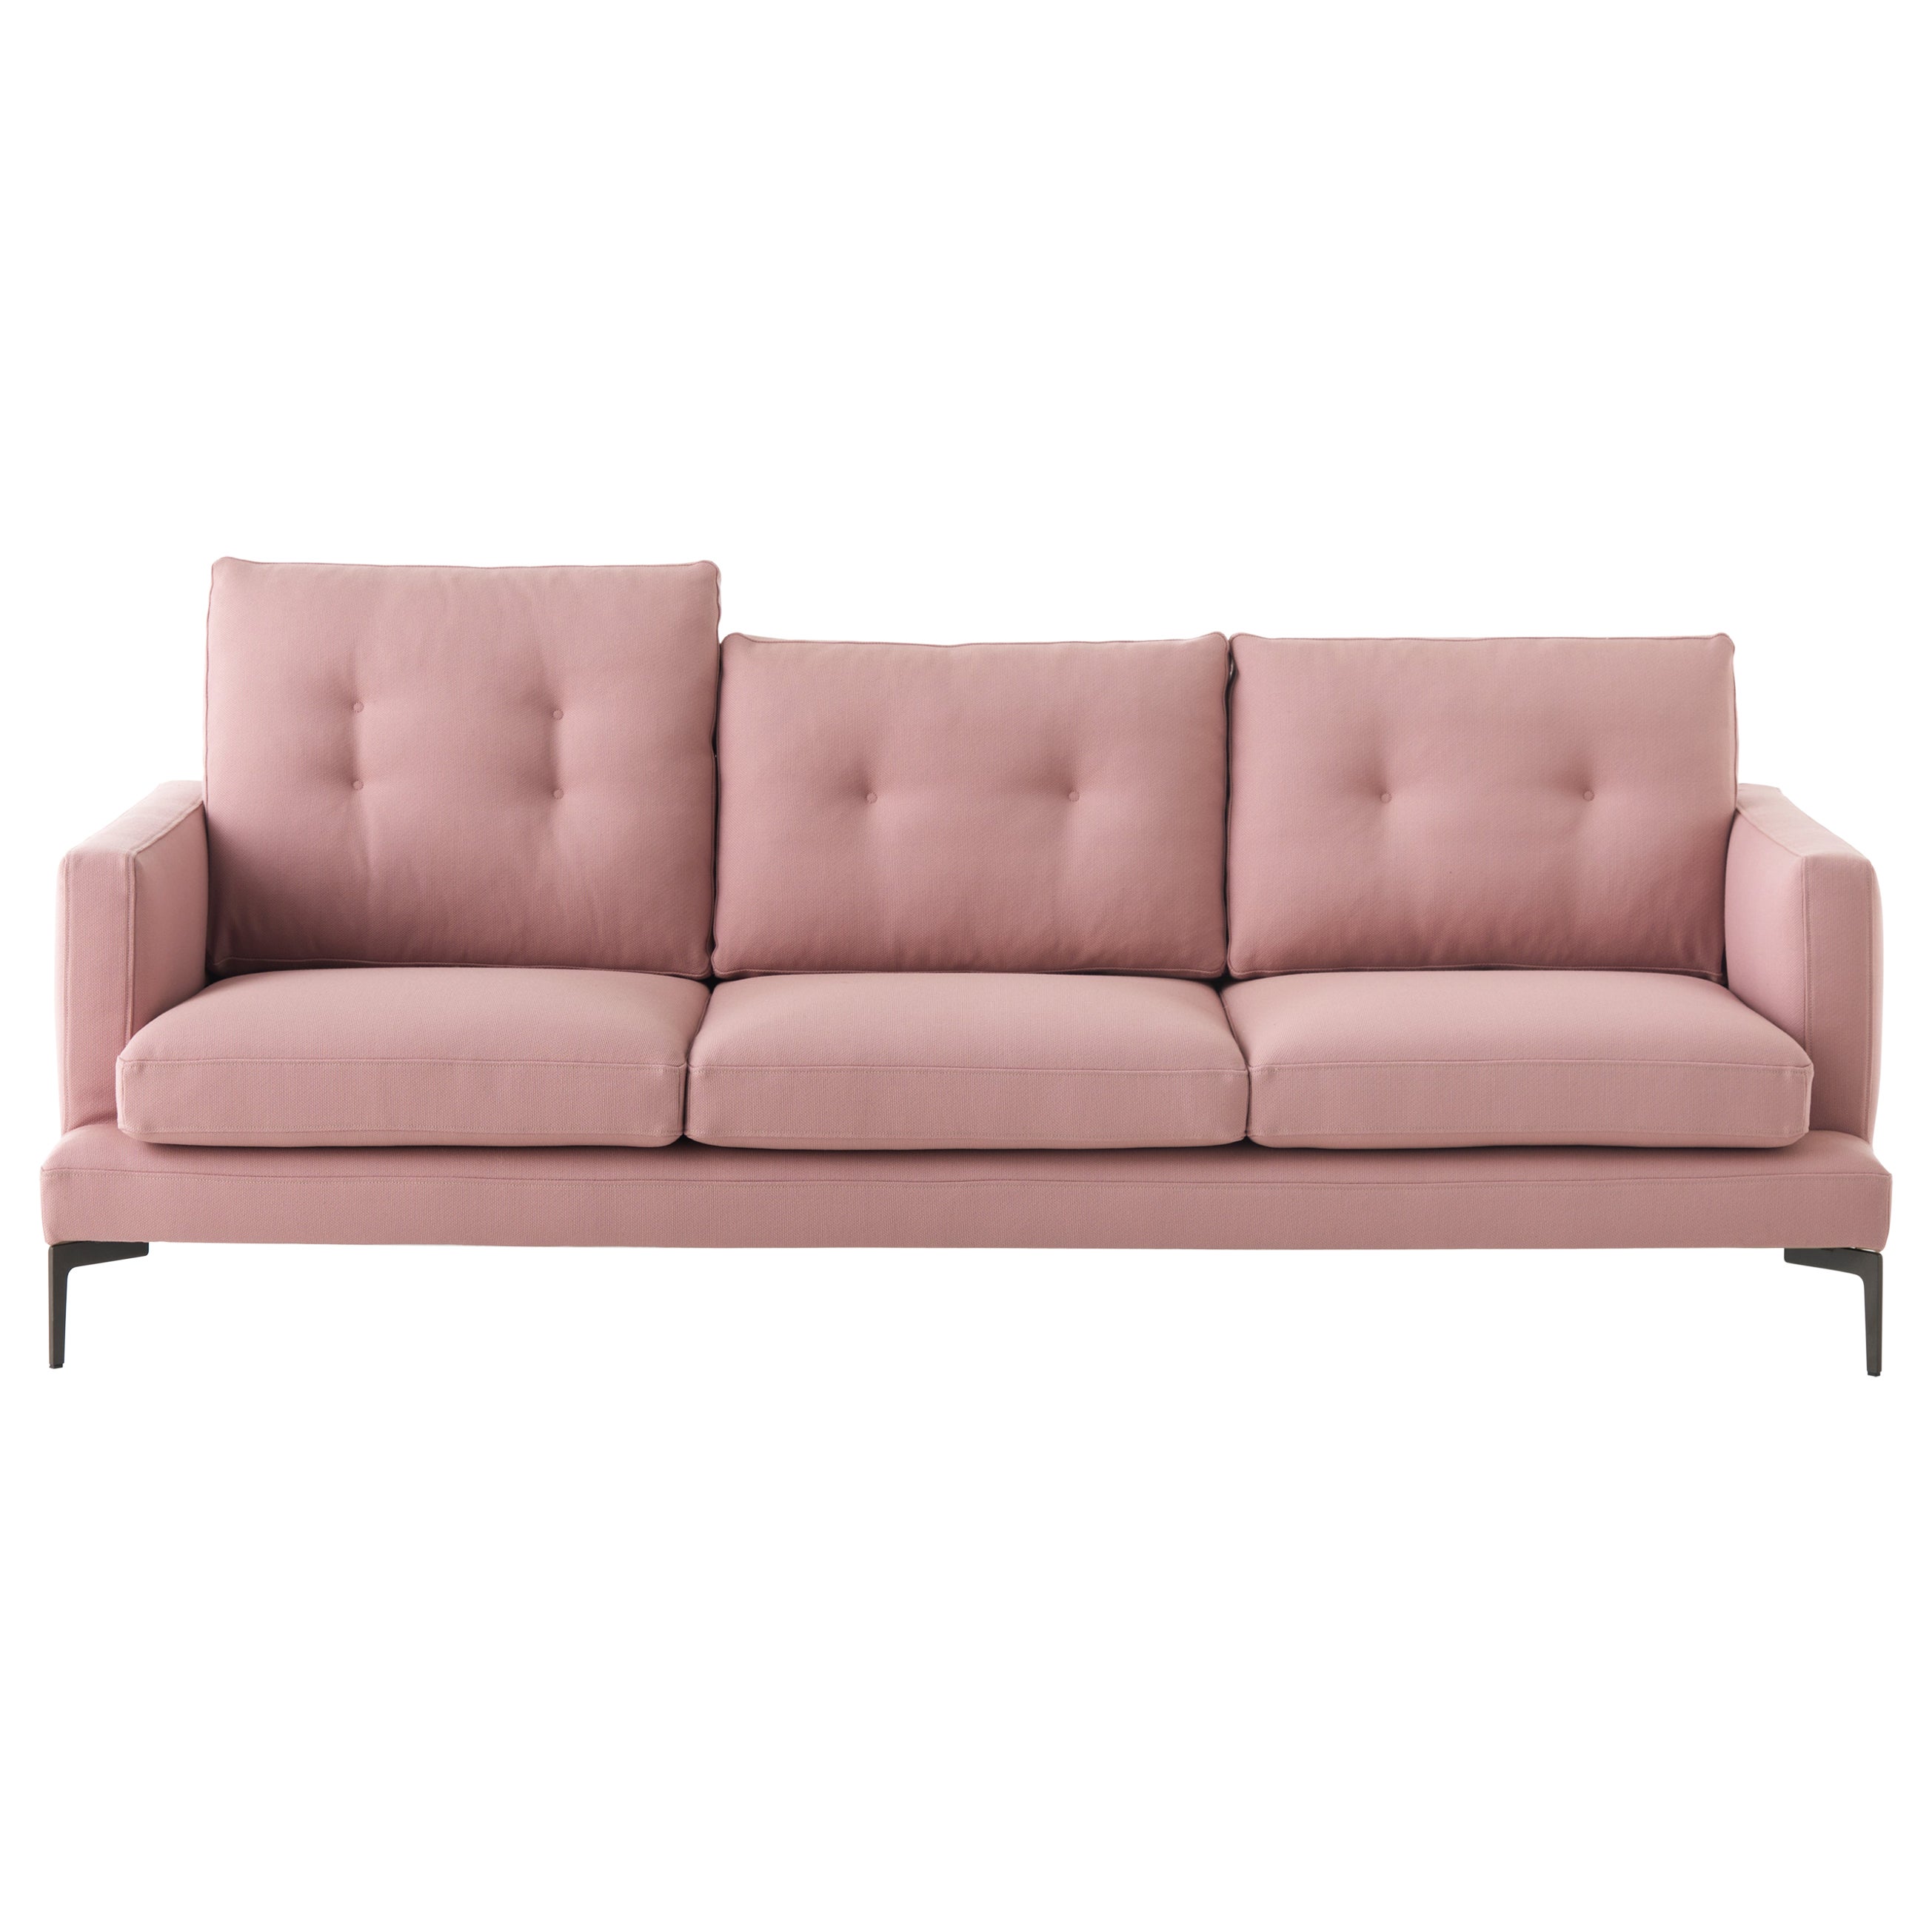 Essentiel 3-Sitz 220 Hohes Kissen-Sofa mit geflochtener rosa geflochtener Polsterung, Sergio Bicego